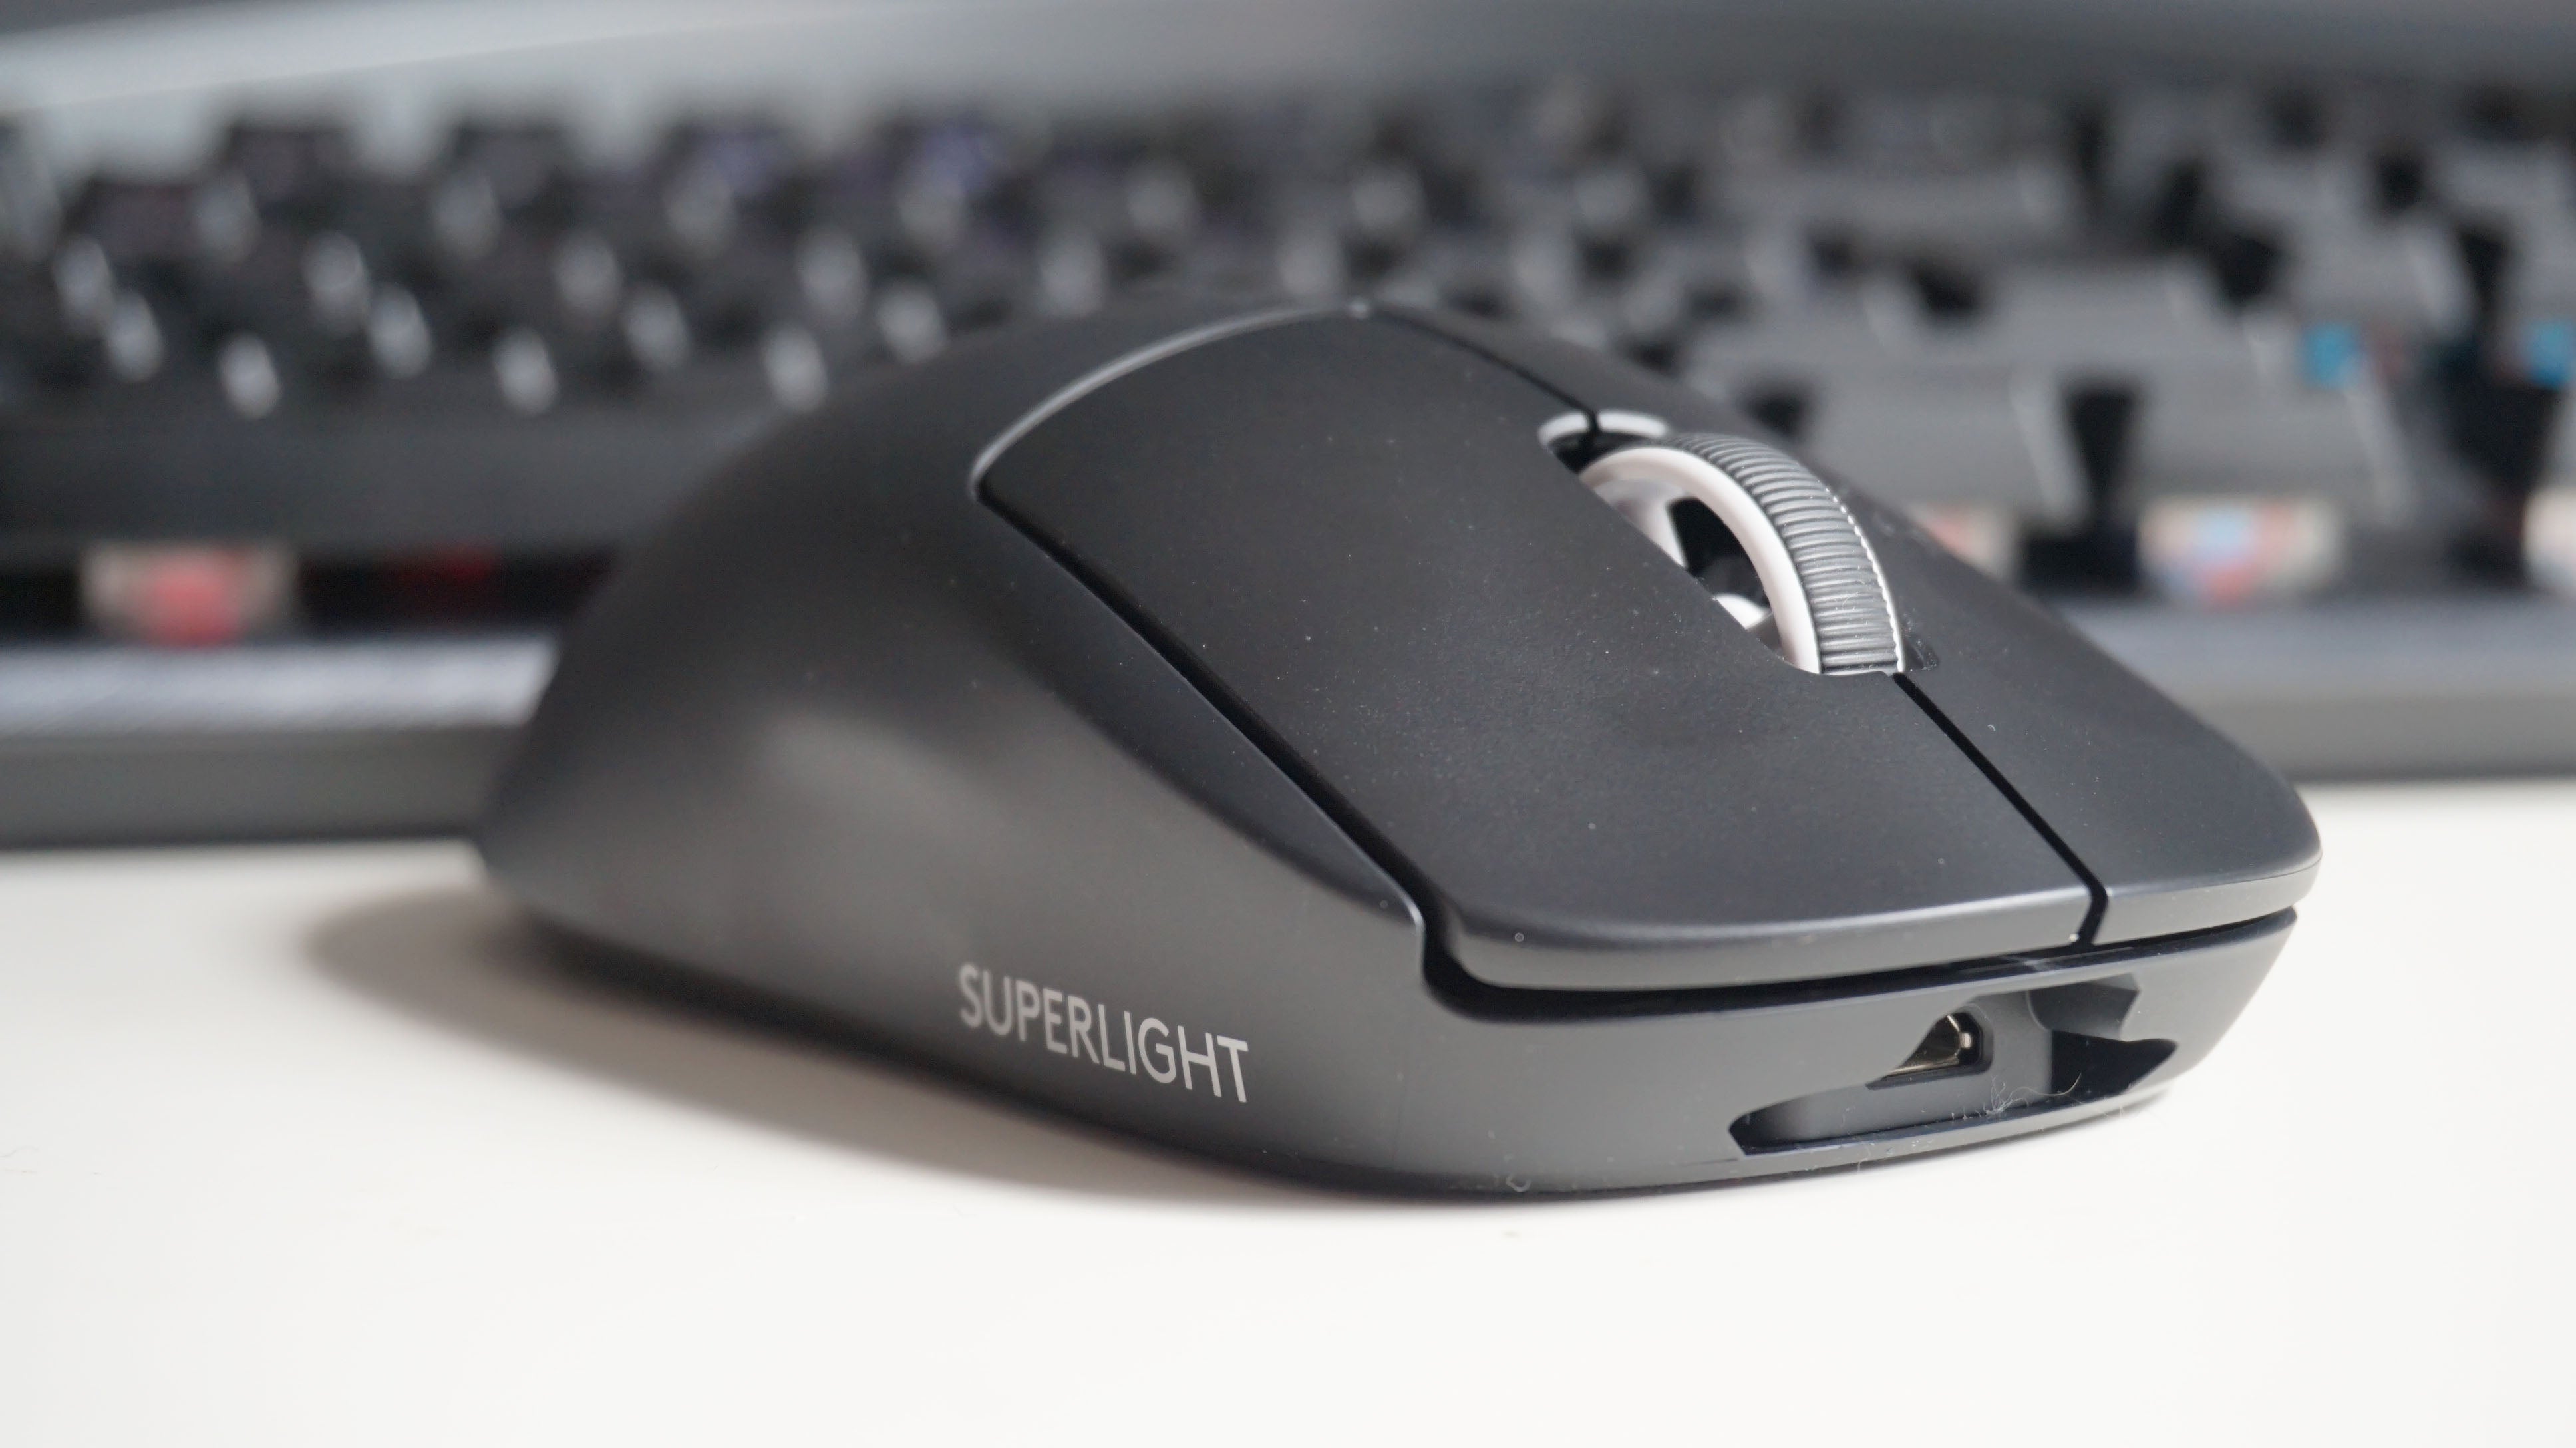 Obtenha a versão atualizada do melhor mouse sem fio da RPS por US $ 50 / £ 30 de desconto